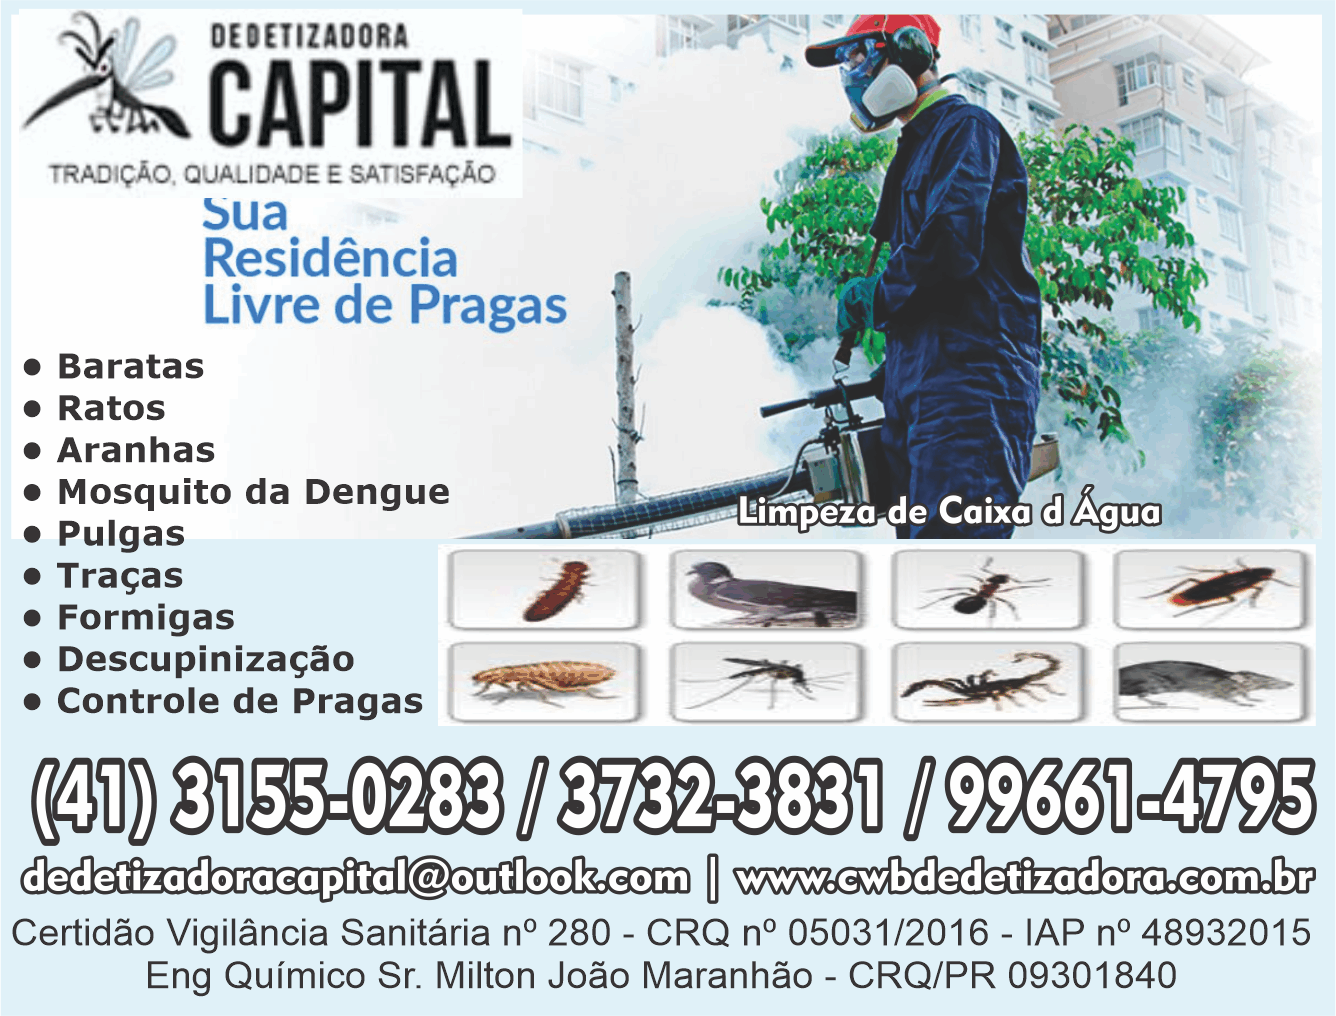 Dedetizadora Capital      Fones: (41)3151-0283 / (41) 99661-4795